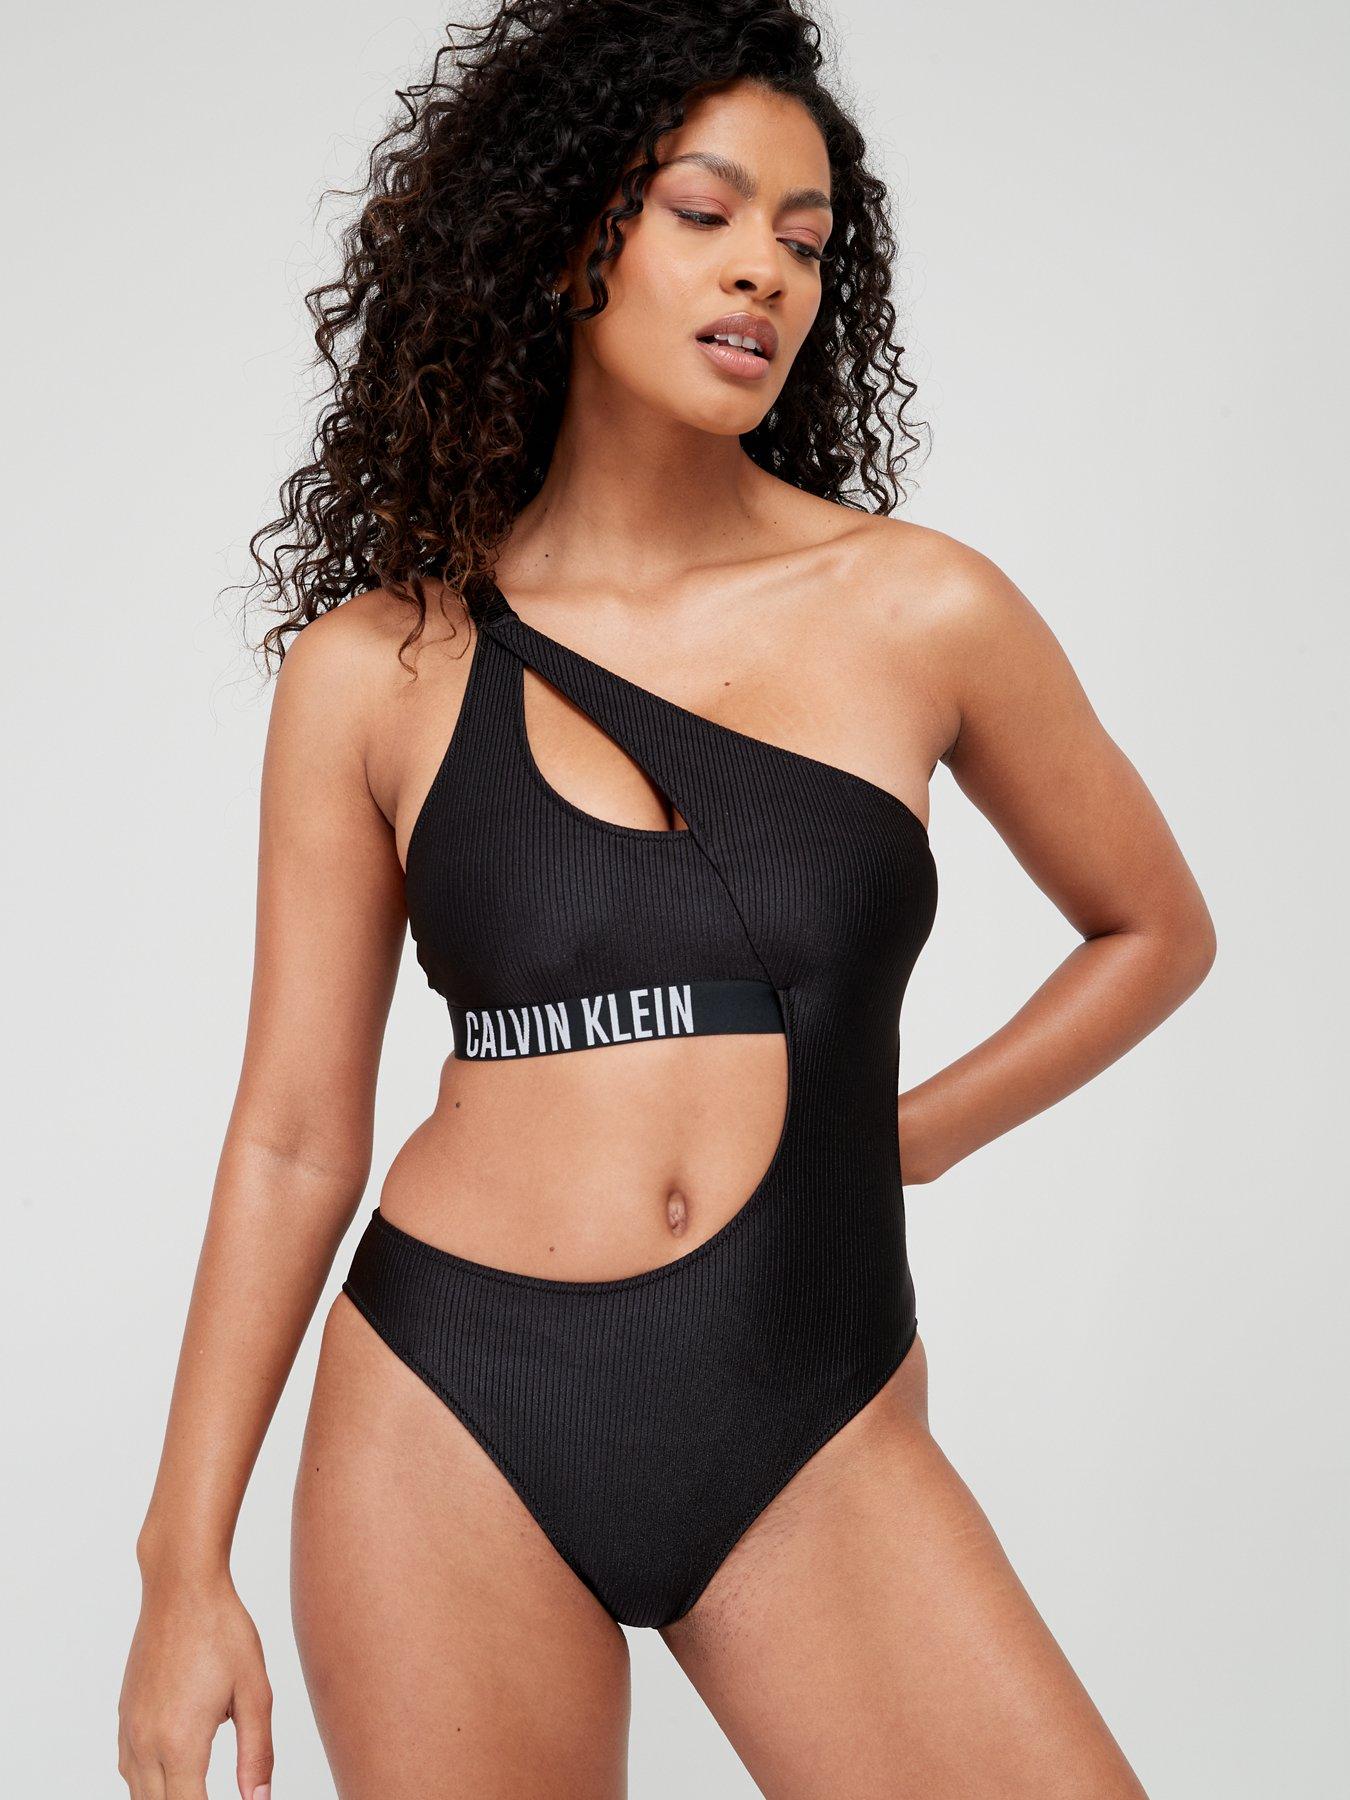 Calvin klein | Swimwear & beachwear | Women 